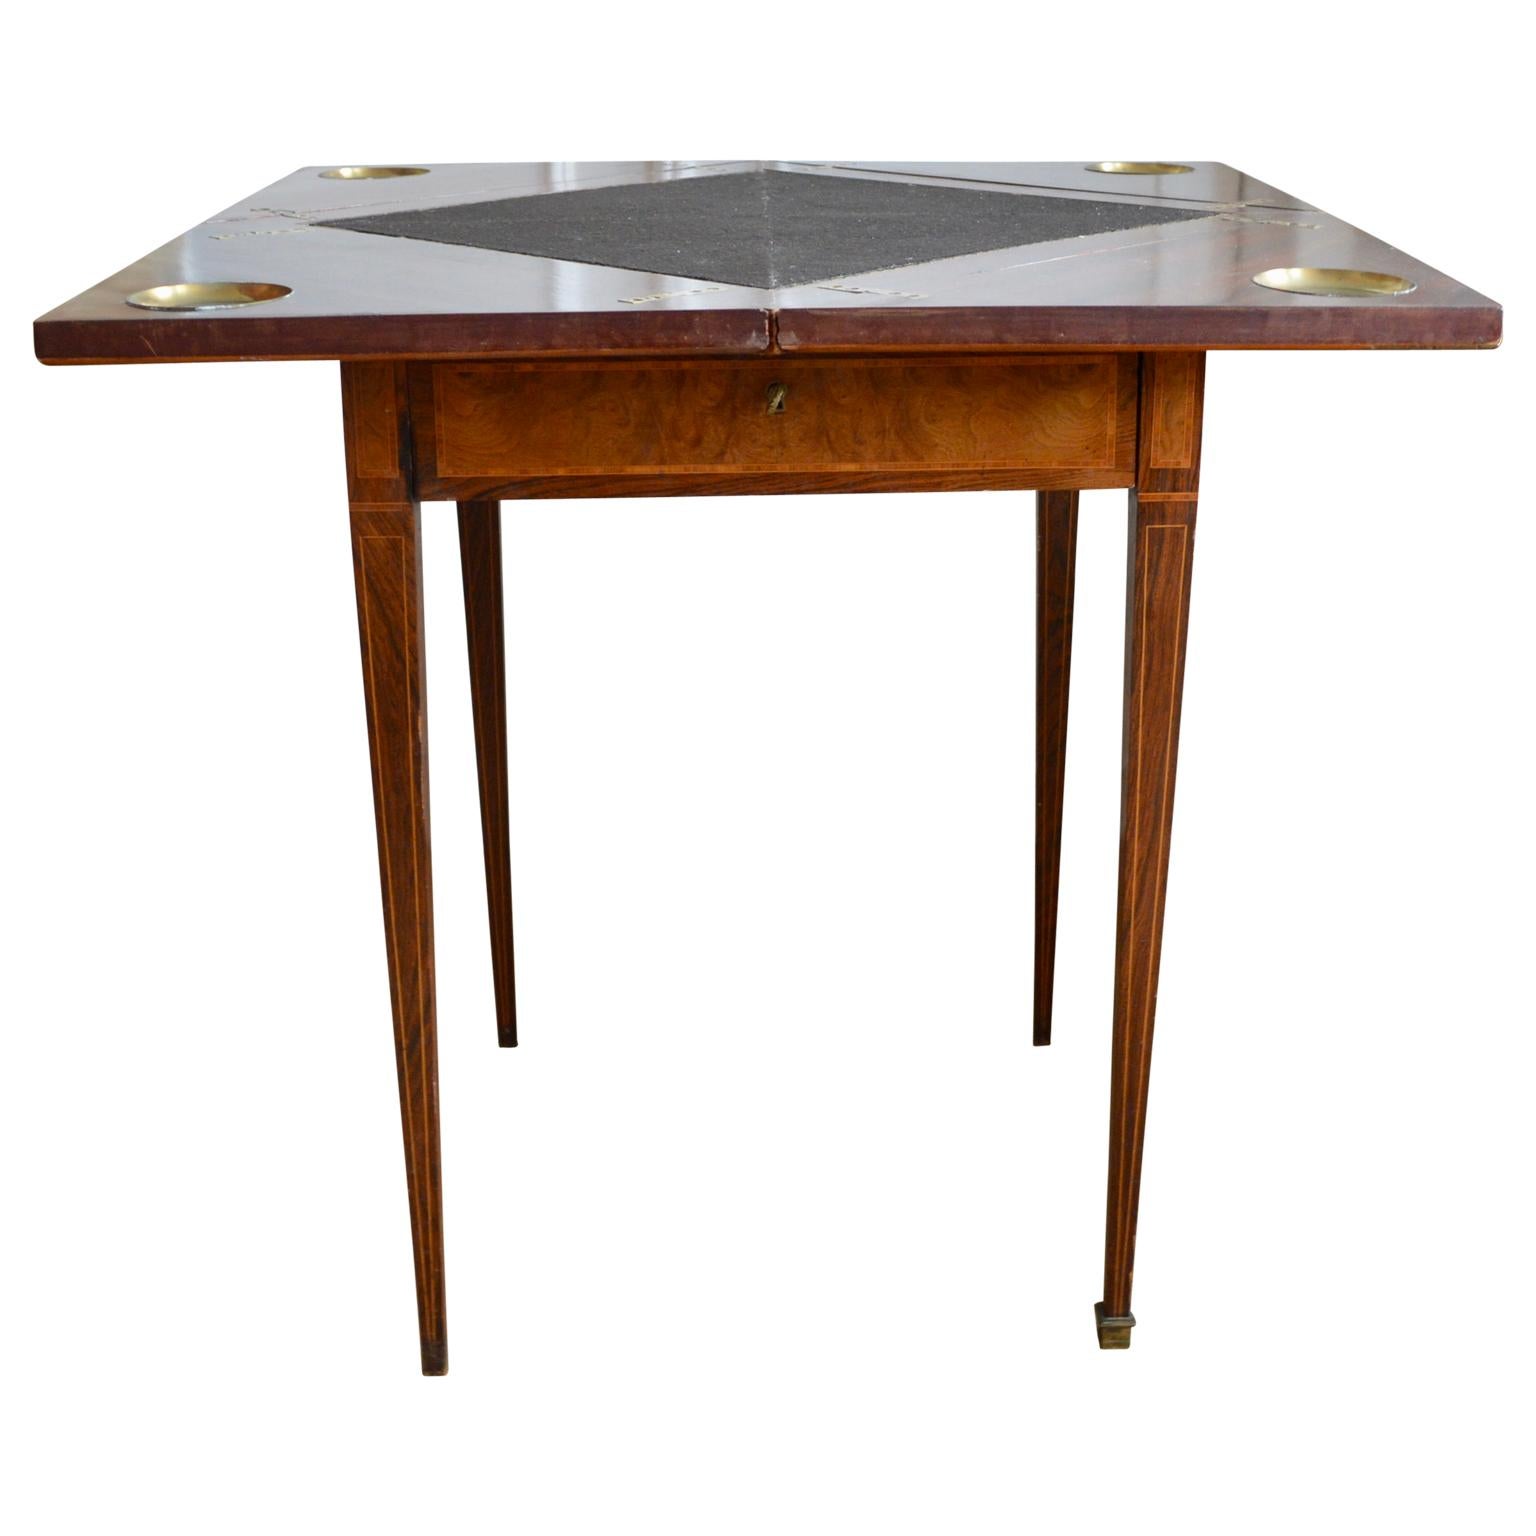 Dieser edwardianische Mahagoni-Kartentisch aus der Zeit um 1900 ist ein einzigartiges Design mit einer wunderschön gemaserten Platte und einer Kante aus satiniertem Holz mit Querbändern. Der Deckel ist drehbar, und vier Teile lassen sich öffnen, um